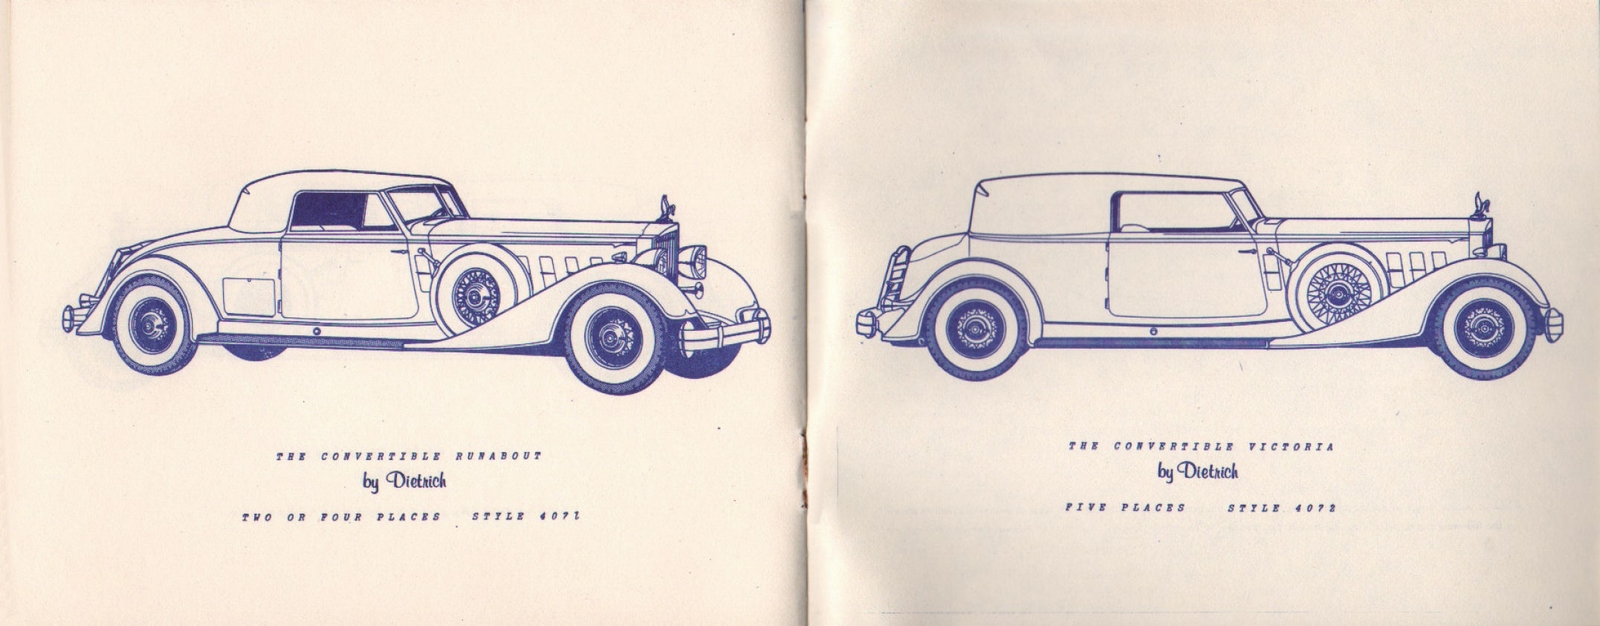 n_1934 Packard Custom Cars Booklet-10-11.jpg